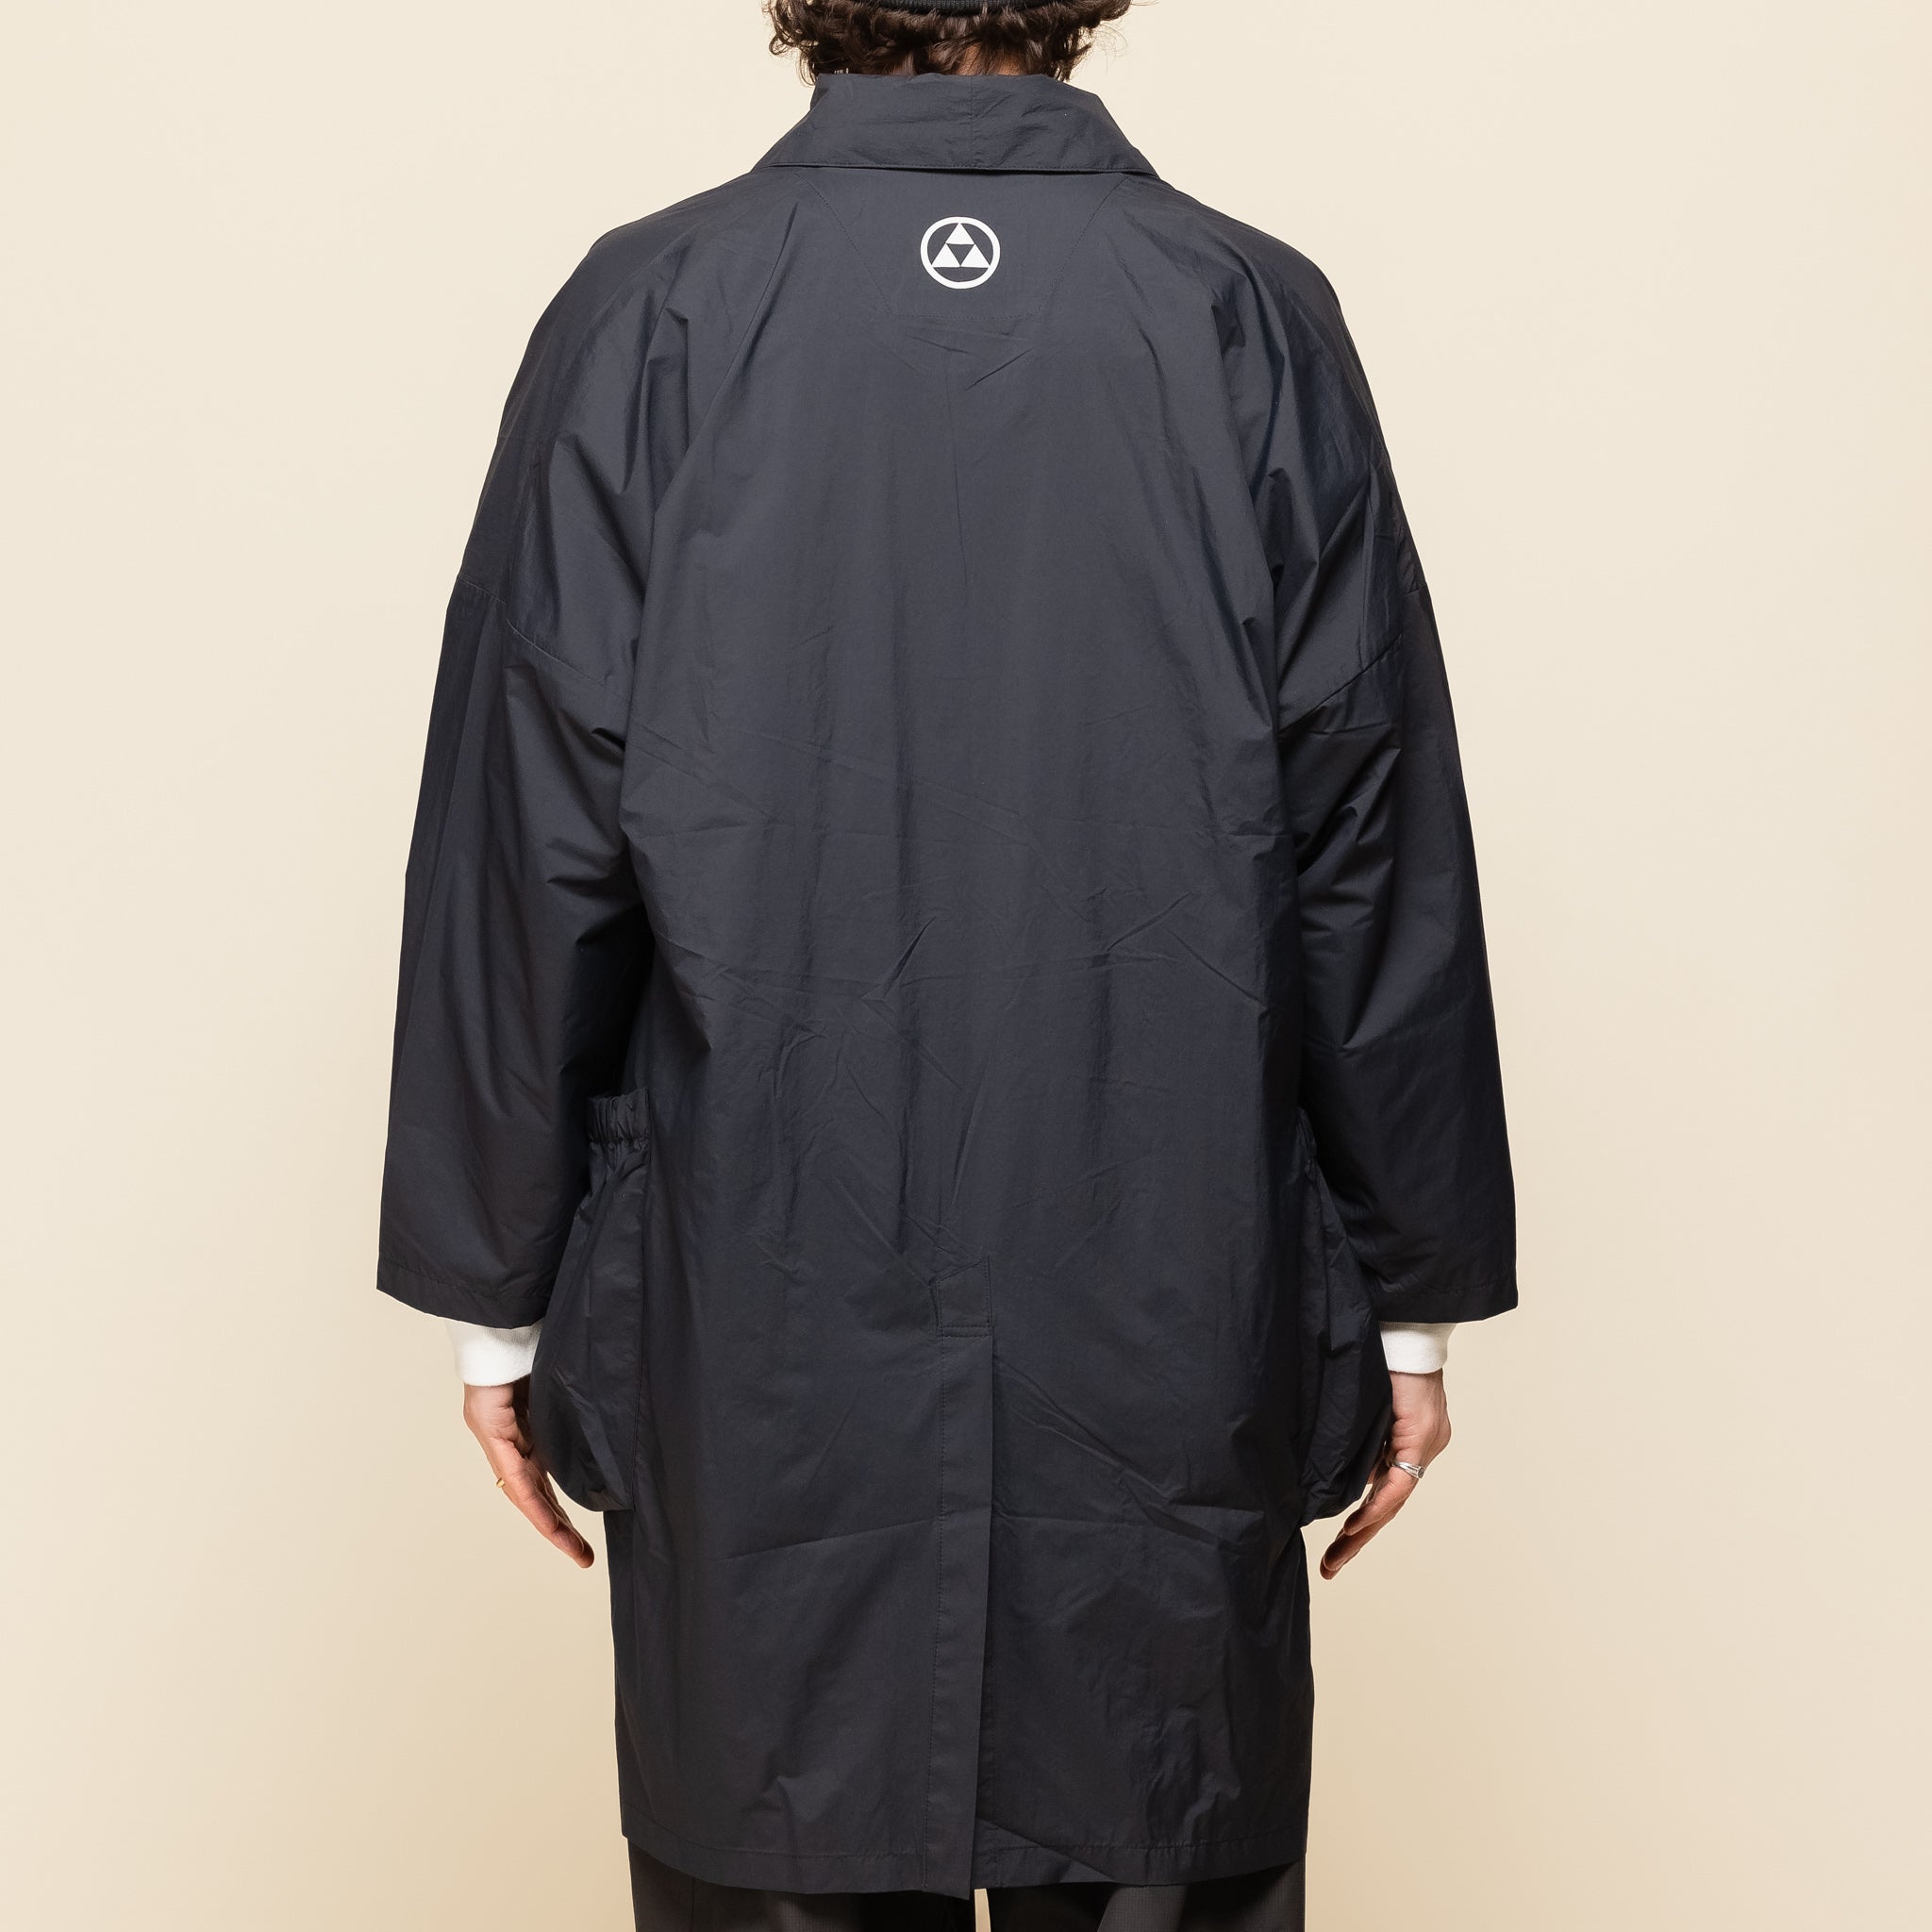 CMF Comfy Outdoor Garment - Haori Coat - Black